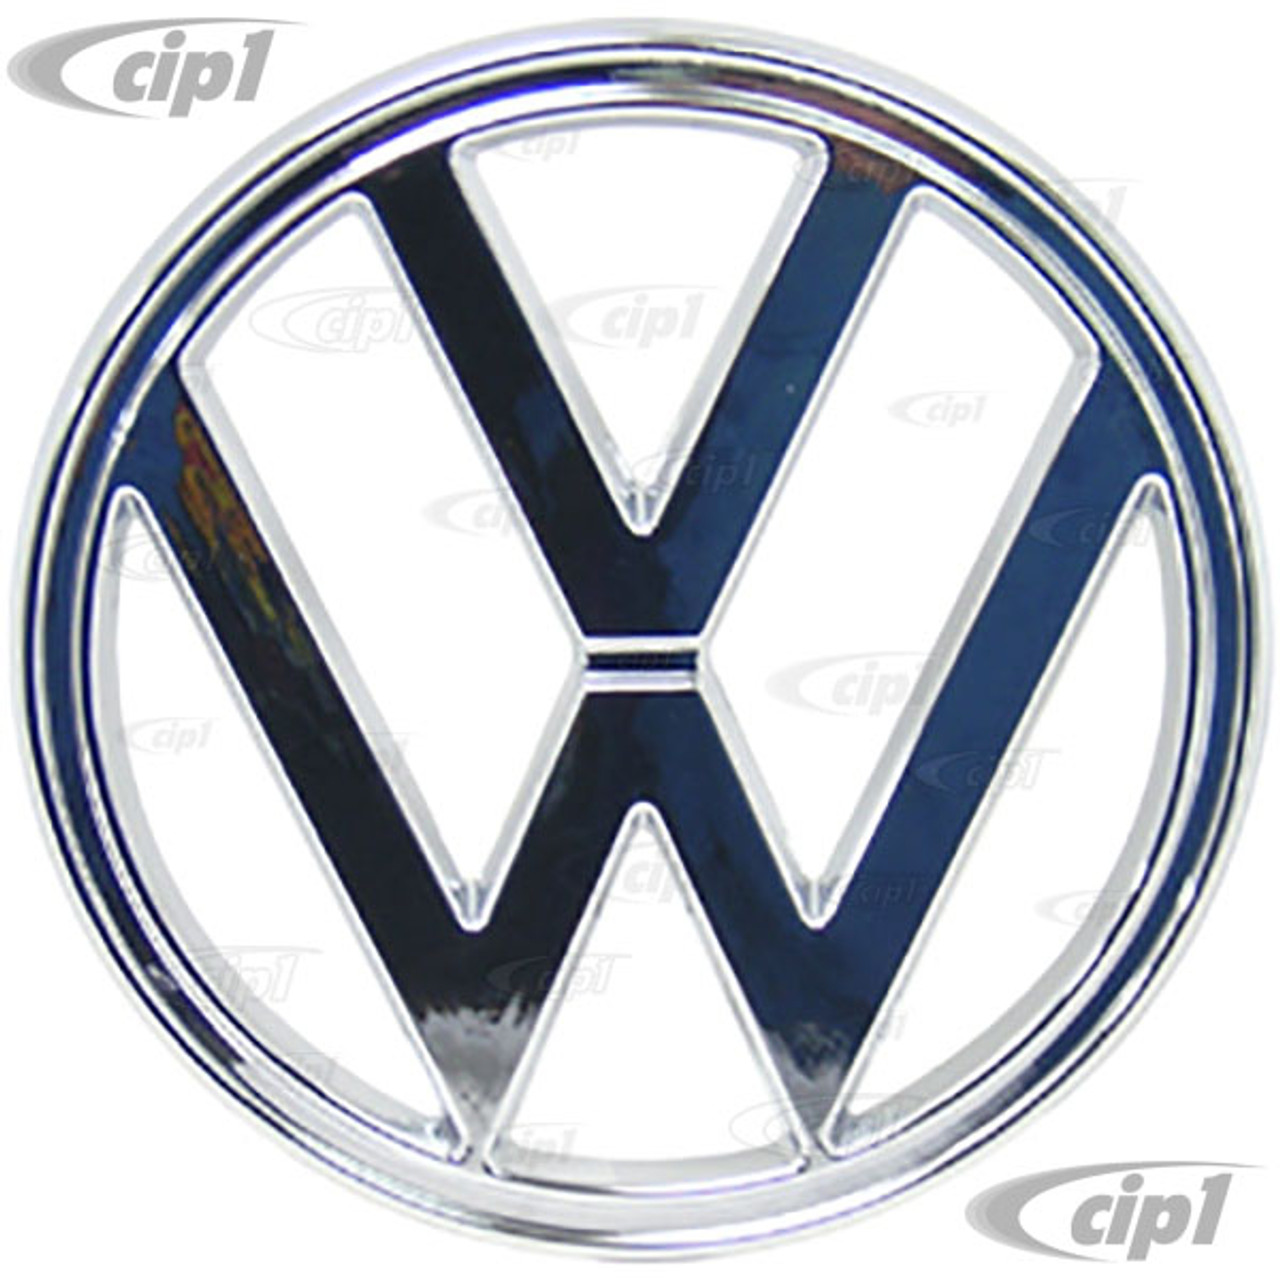  Audi Rings Front Grill Badge Emblem Chrome Nos - 893853605 :  Automotive